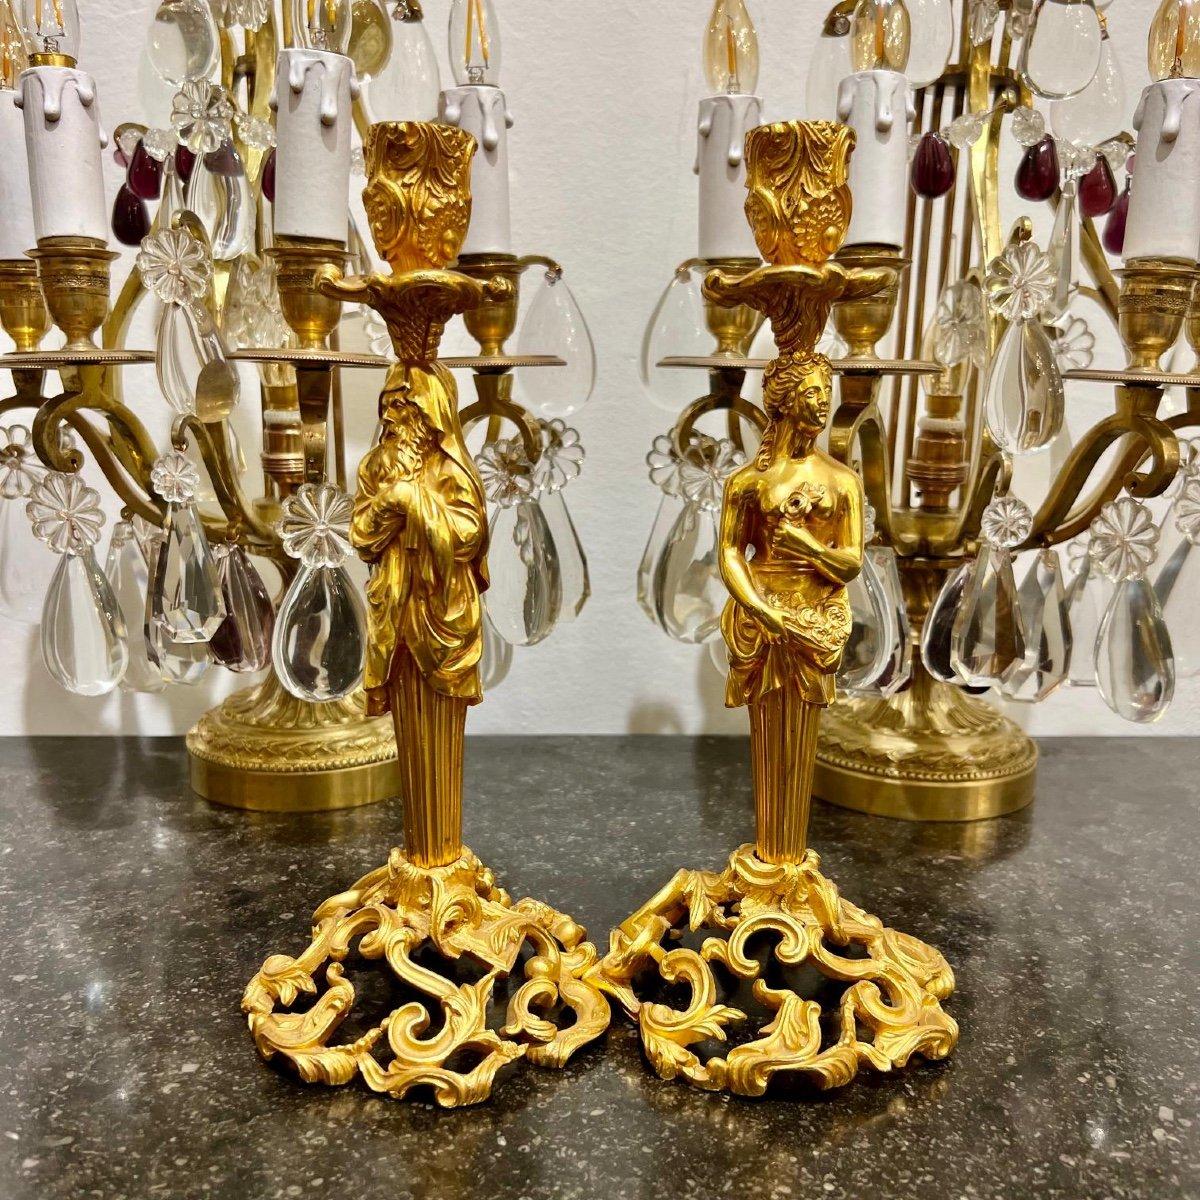 Diese prächtigen Kerzenhalter sind aus vergoldeter Bronze im Stil von Napoleon III. gefertigt. Ihre Stiele haben die Form von Figuren eines Mannes und einer Frau in klassischen Gewändern. Sie zeichnen sich durch eine exquisite Vergoldung und